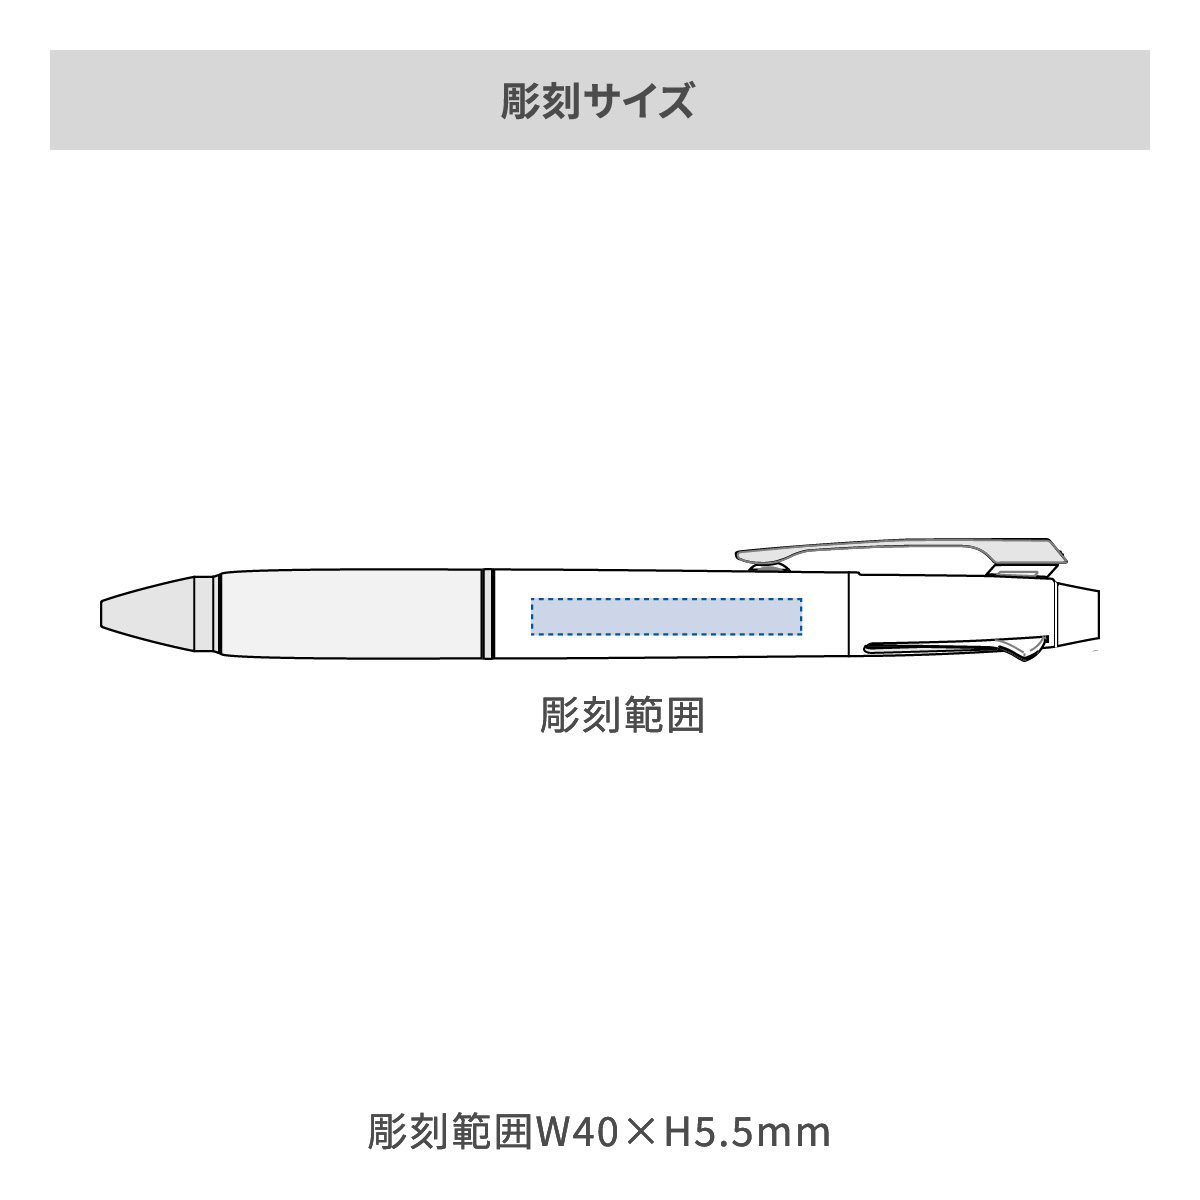 【短納期】三菱鉛筆 ジェットストリーム 多機能ペン 2&1 0.7mmの名入れ範囲